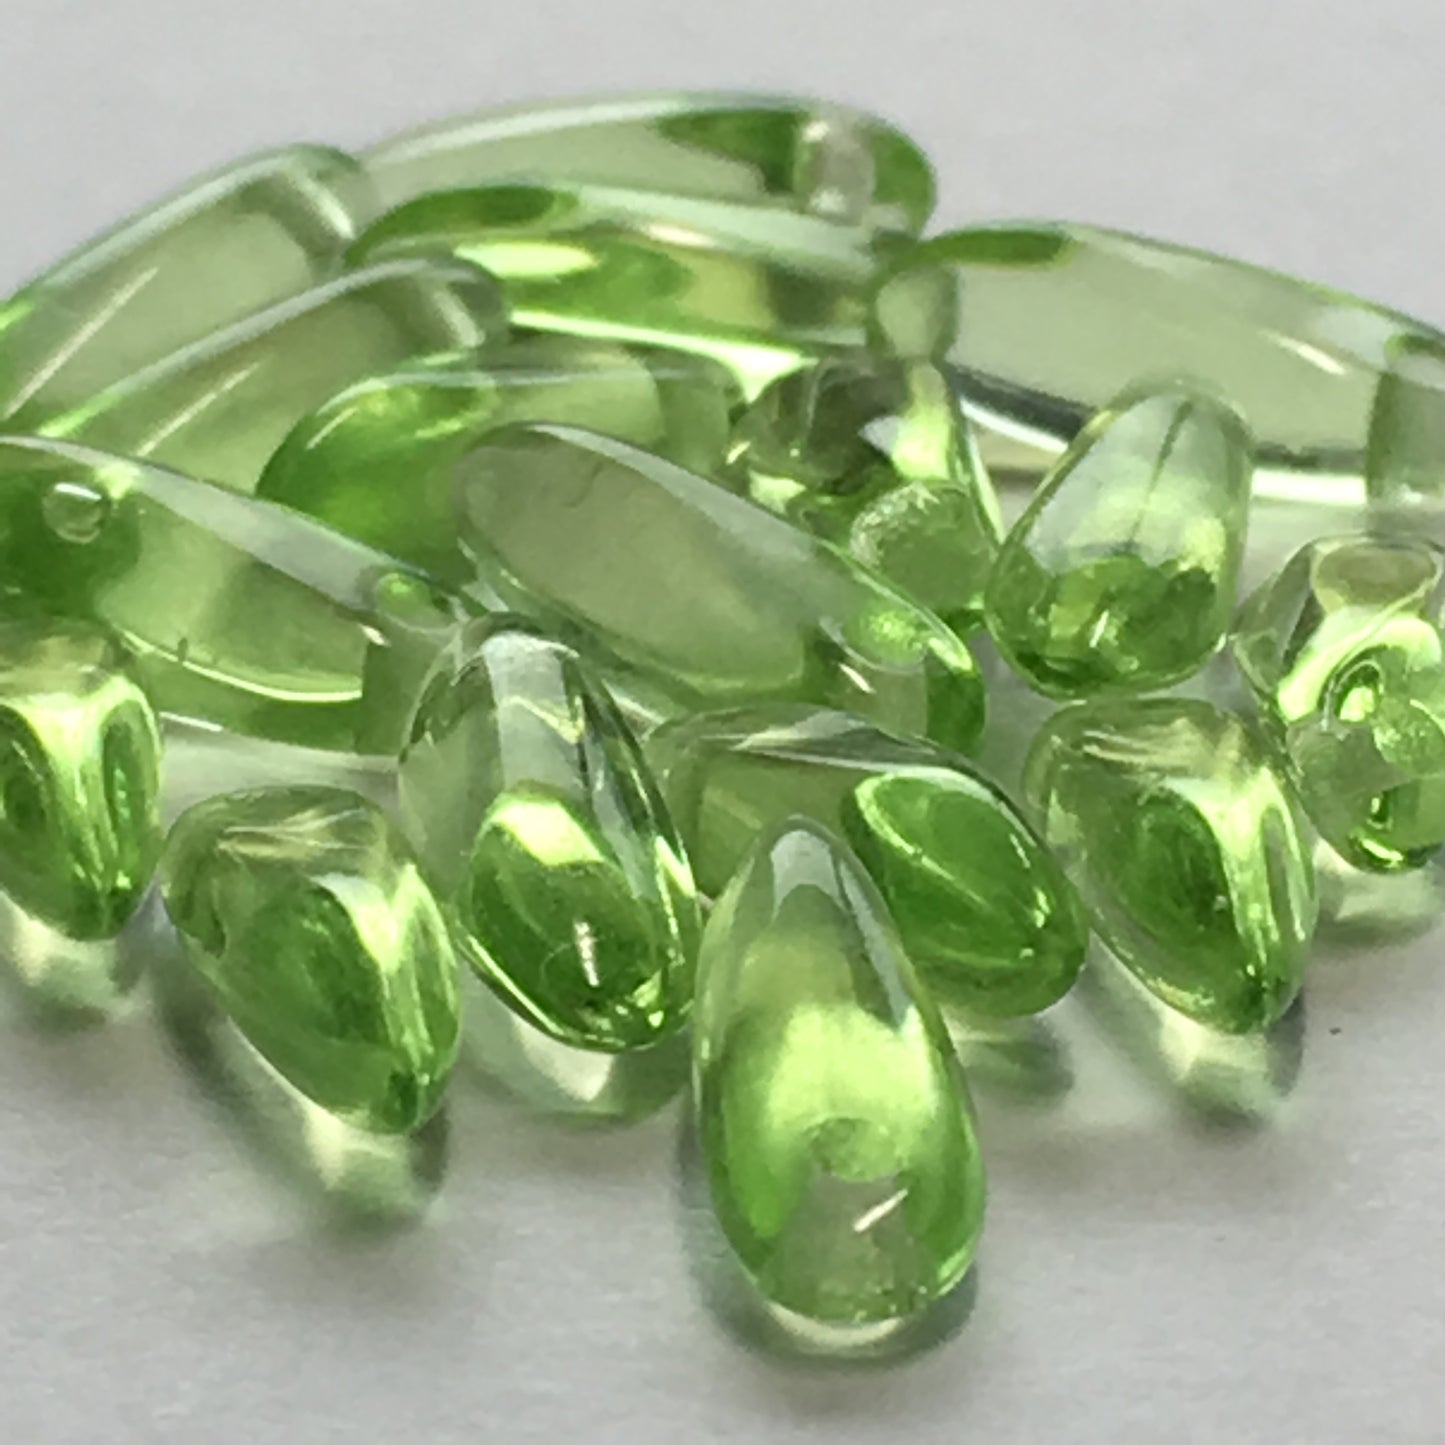 Transparent Green Glass Dagger Beads, 3 x 10 mm, 20 Beads